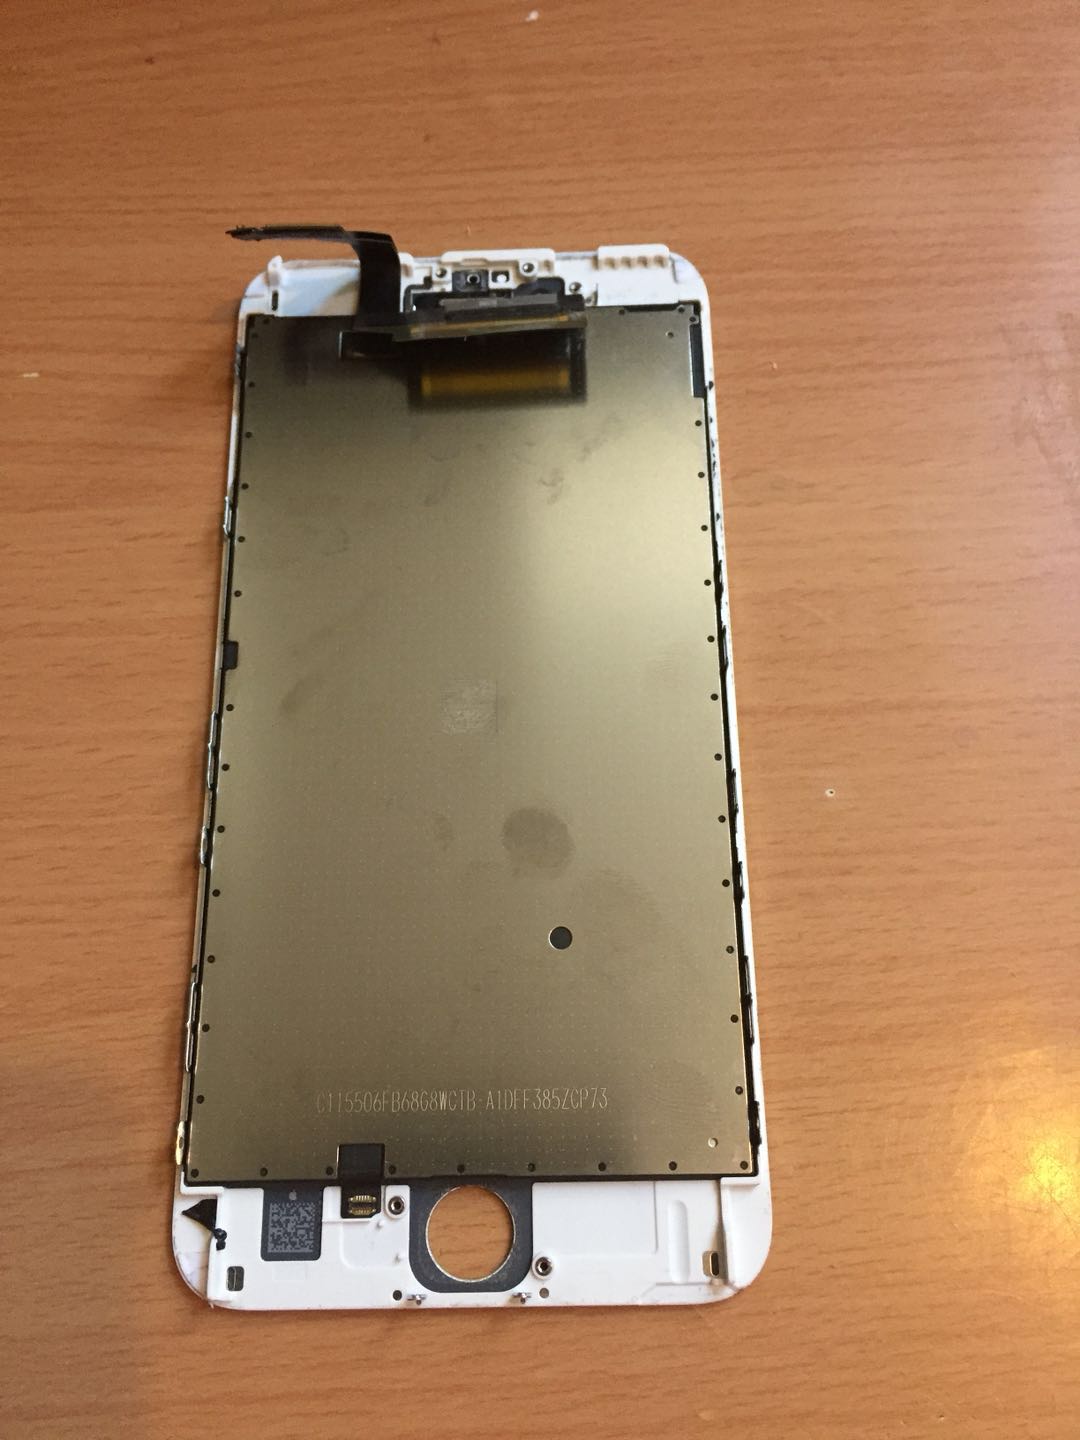 fix my iphone 6s plus screen